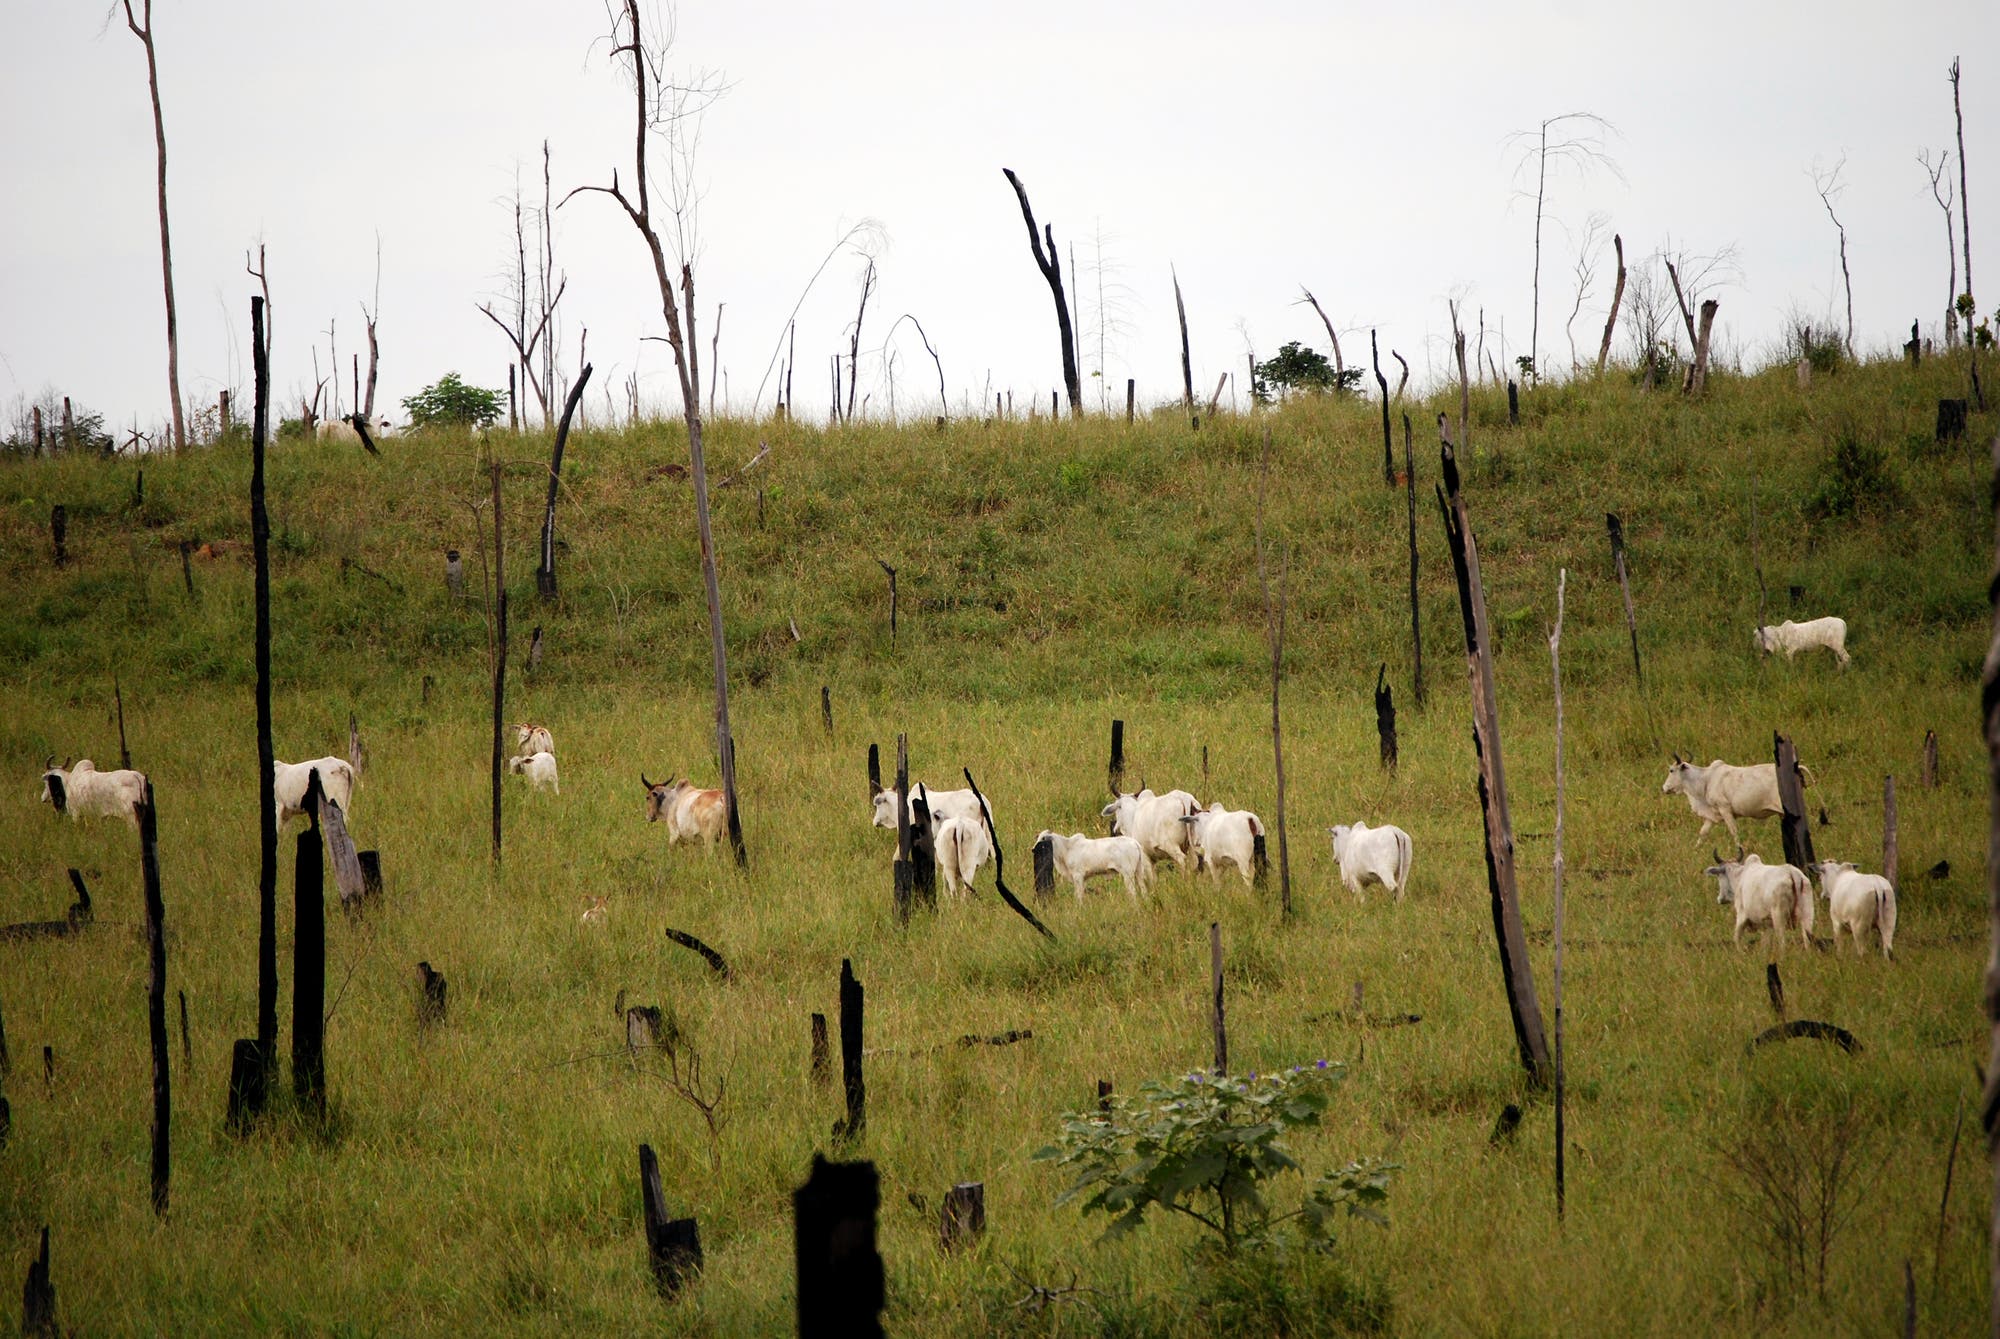 Vieh weidet zwischen verkohlten Baumstümpfen – den kläglichen Resten des einstigen Regenwaldes